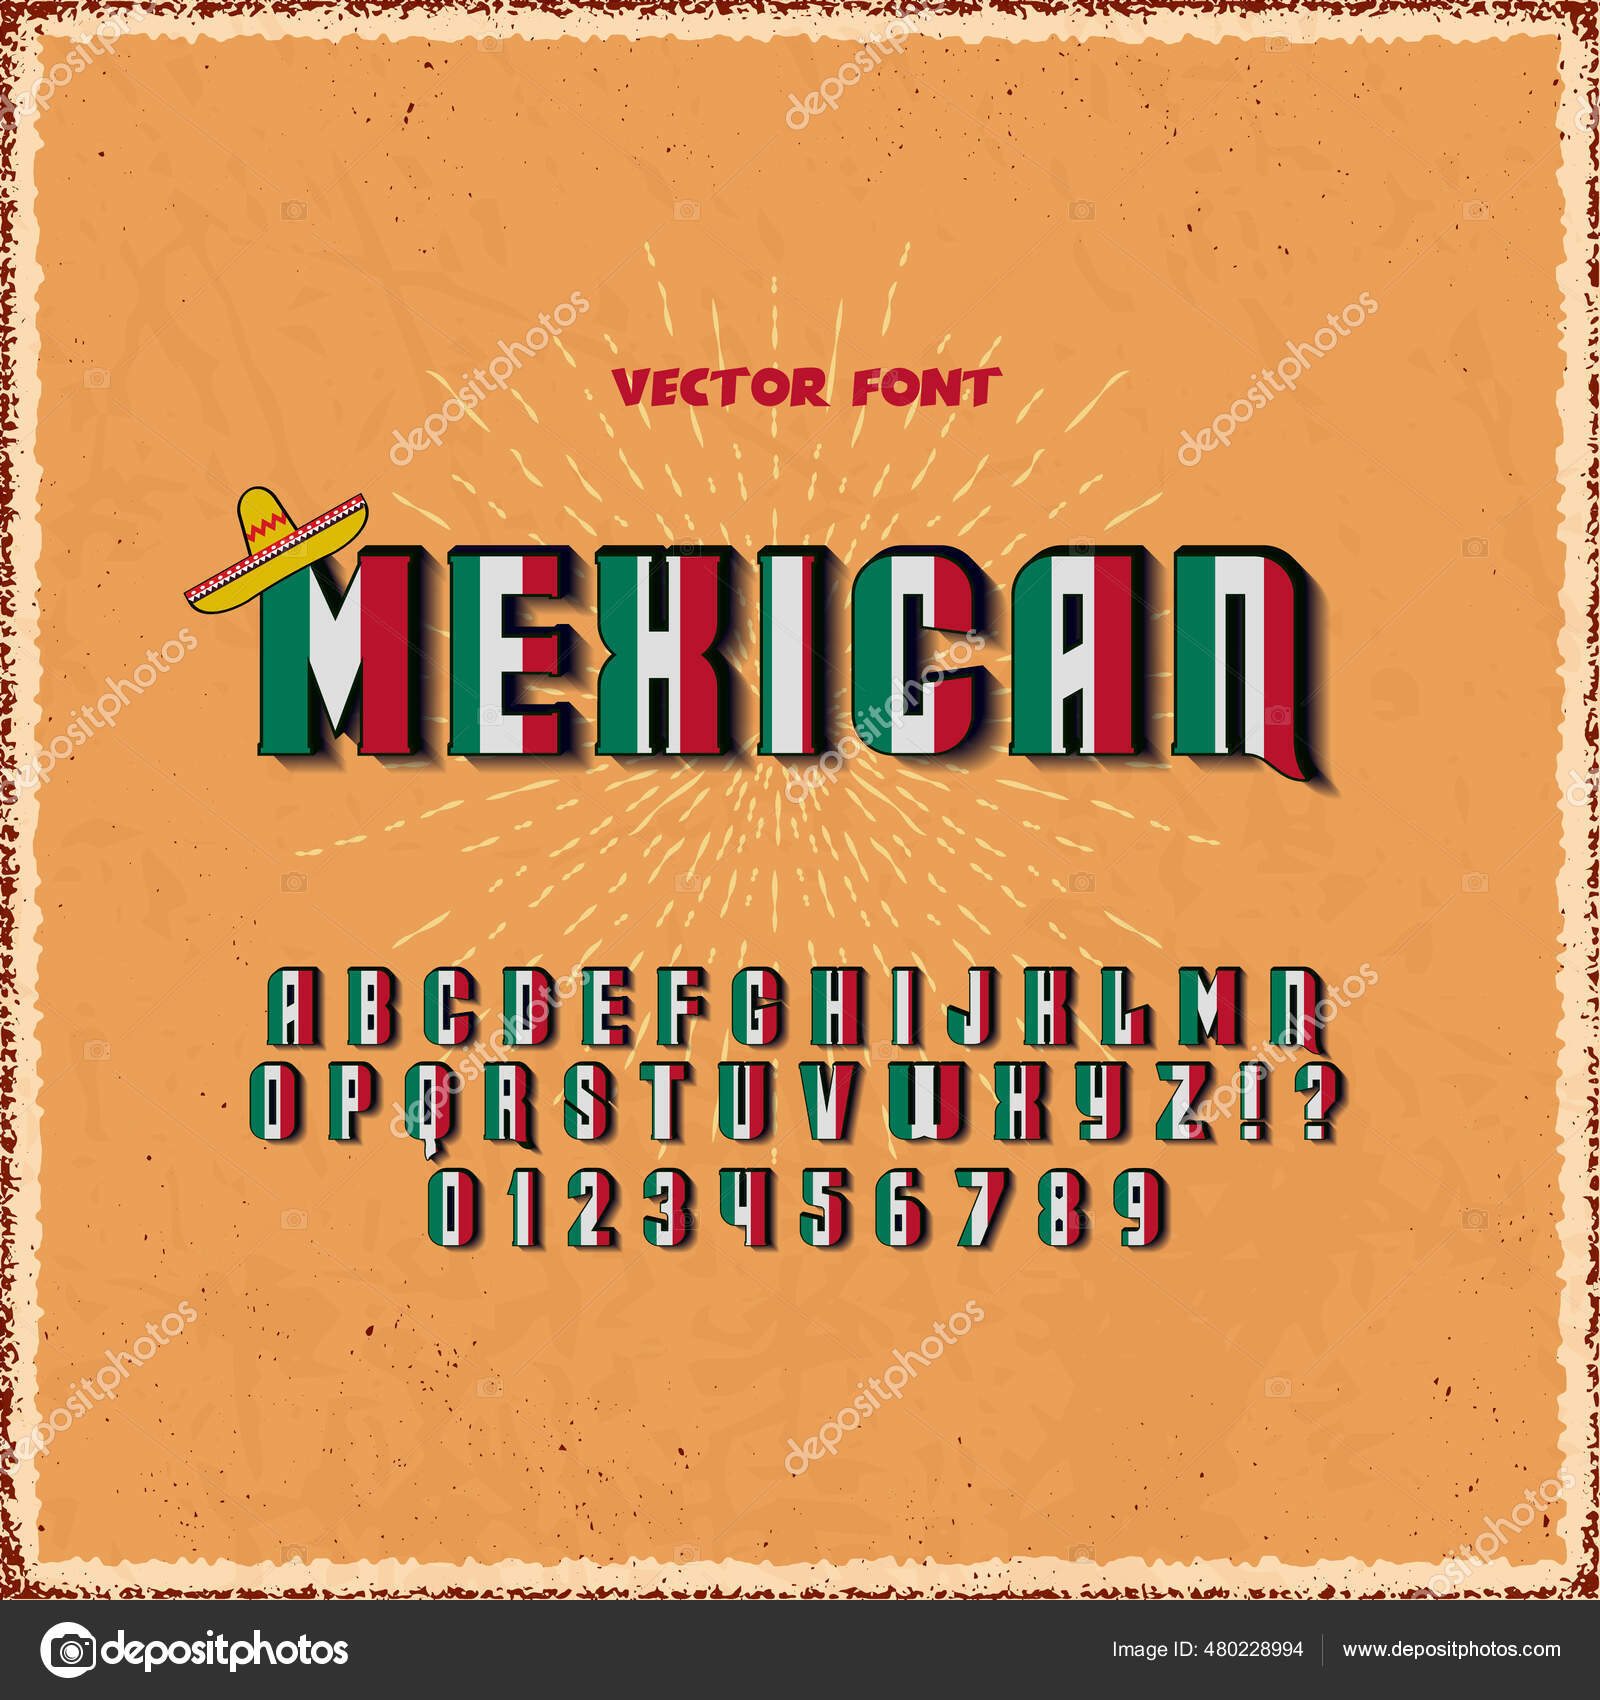 Alfabeto minúscula -  México